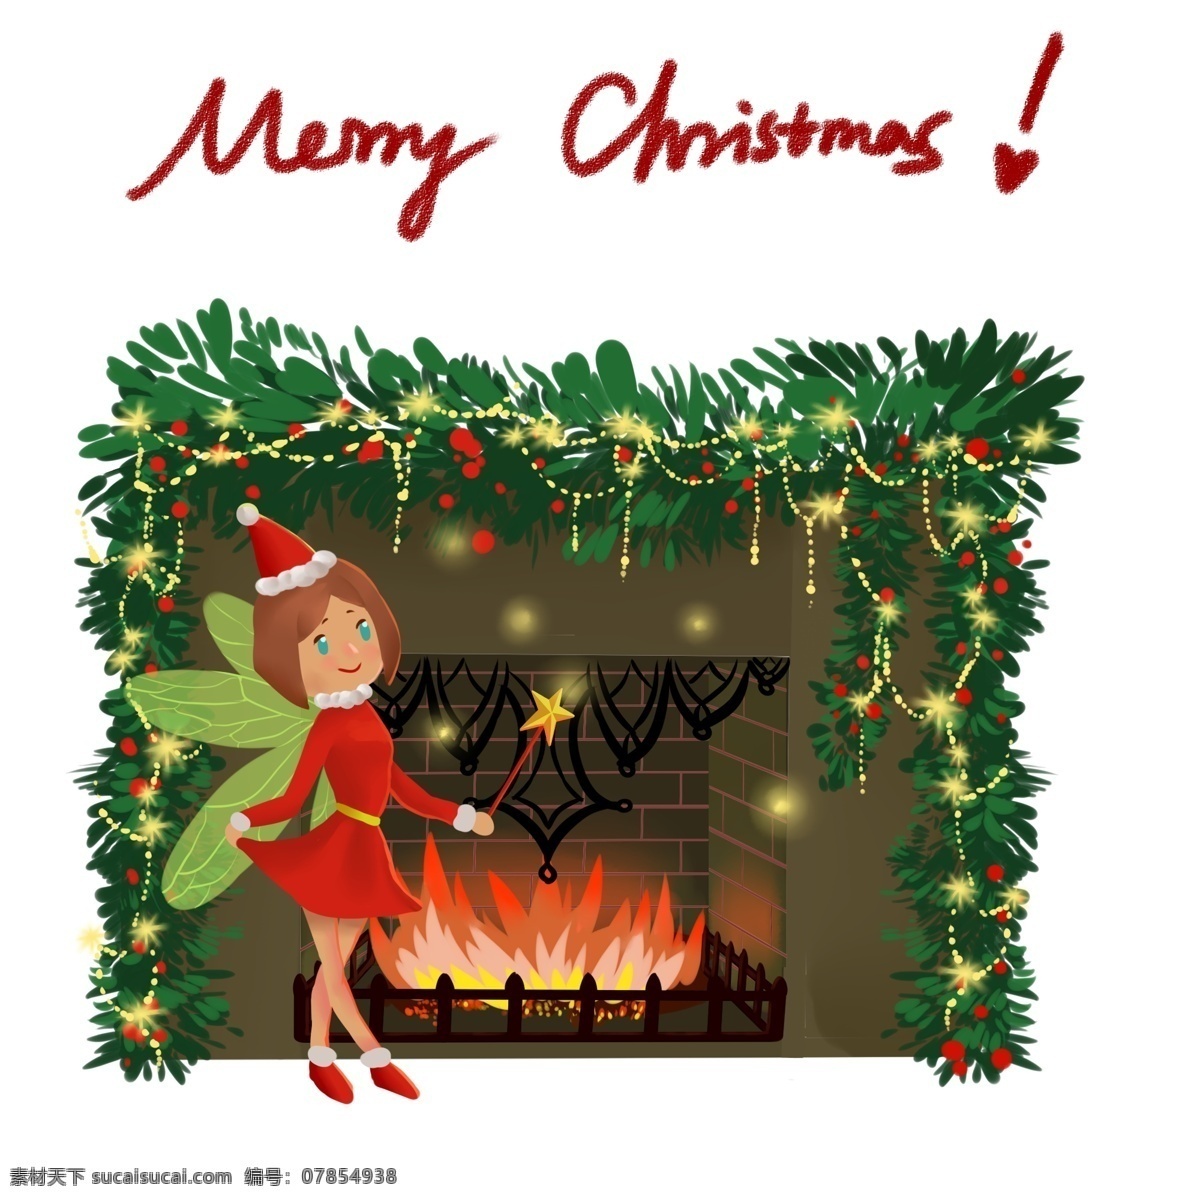 手绘 卡通 圣诞节 小精灵 圣诞节人物 圣诞节插画 圣诞人物 圣诞夜 圣诞树 圣诞 礼物 礼盒 壁炉